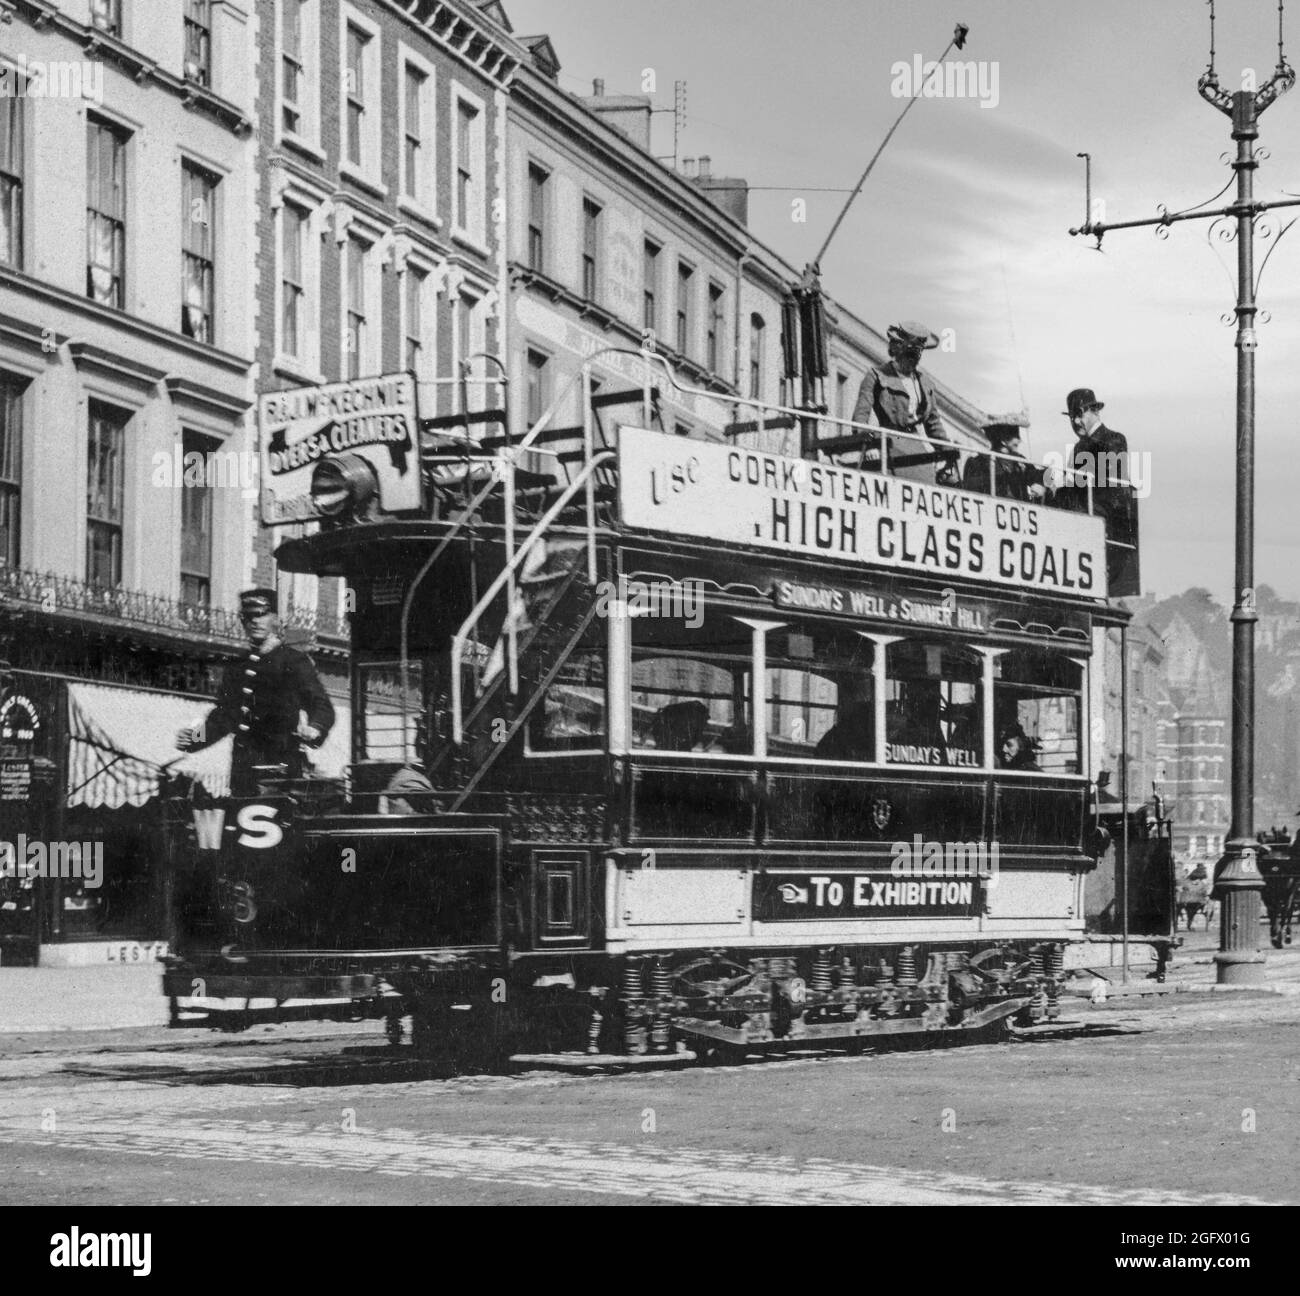 Vue du début du XXe siècle sur un tramway électrique appelé trolley à l'époque, le long de Patrick Street dans le centre-ville de Cork. Exploités par la Cork Electric Tramways and Lighting Company, ils ont couru de 1898 à 1931 une victime de la popularité croissante des services d'autobus. Banque D'Images